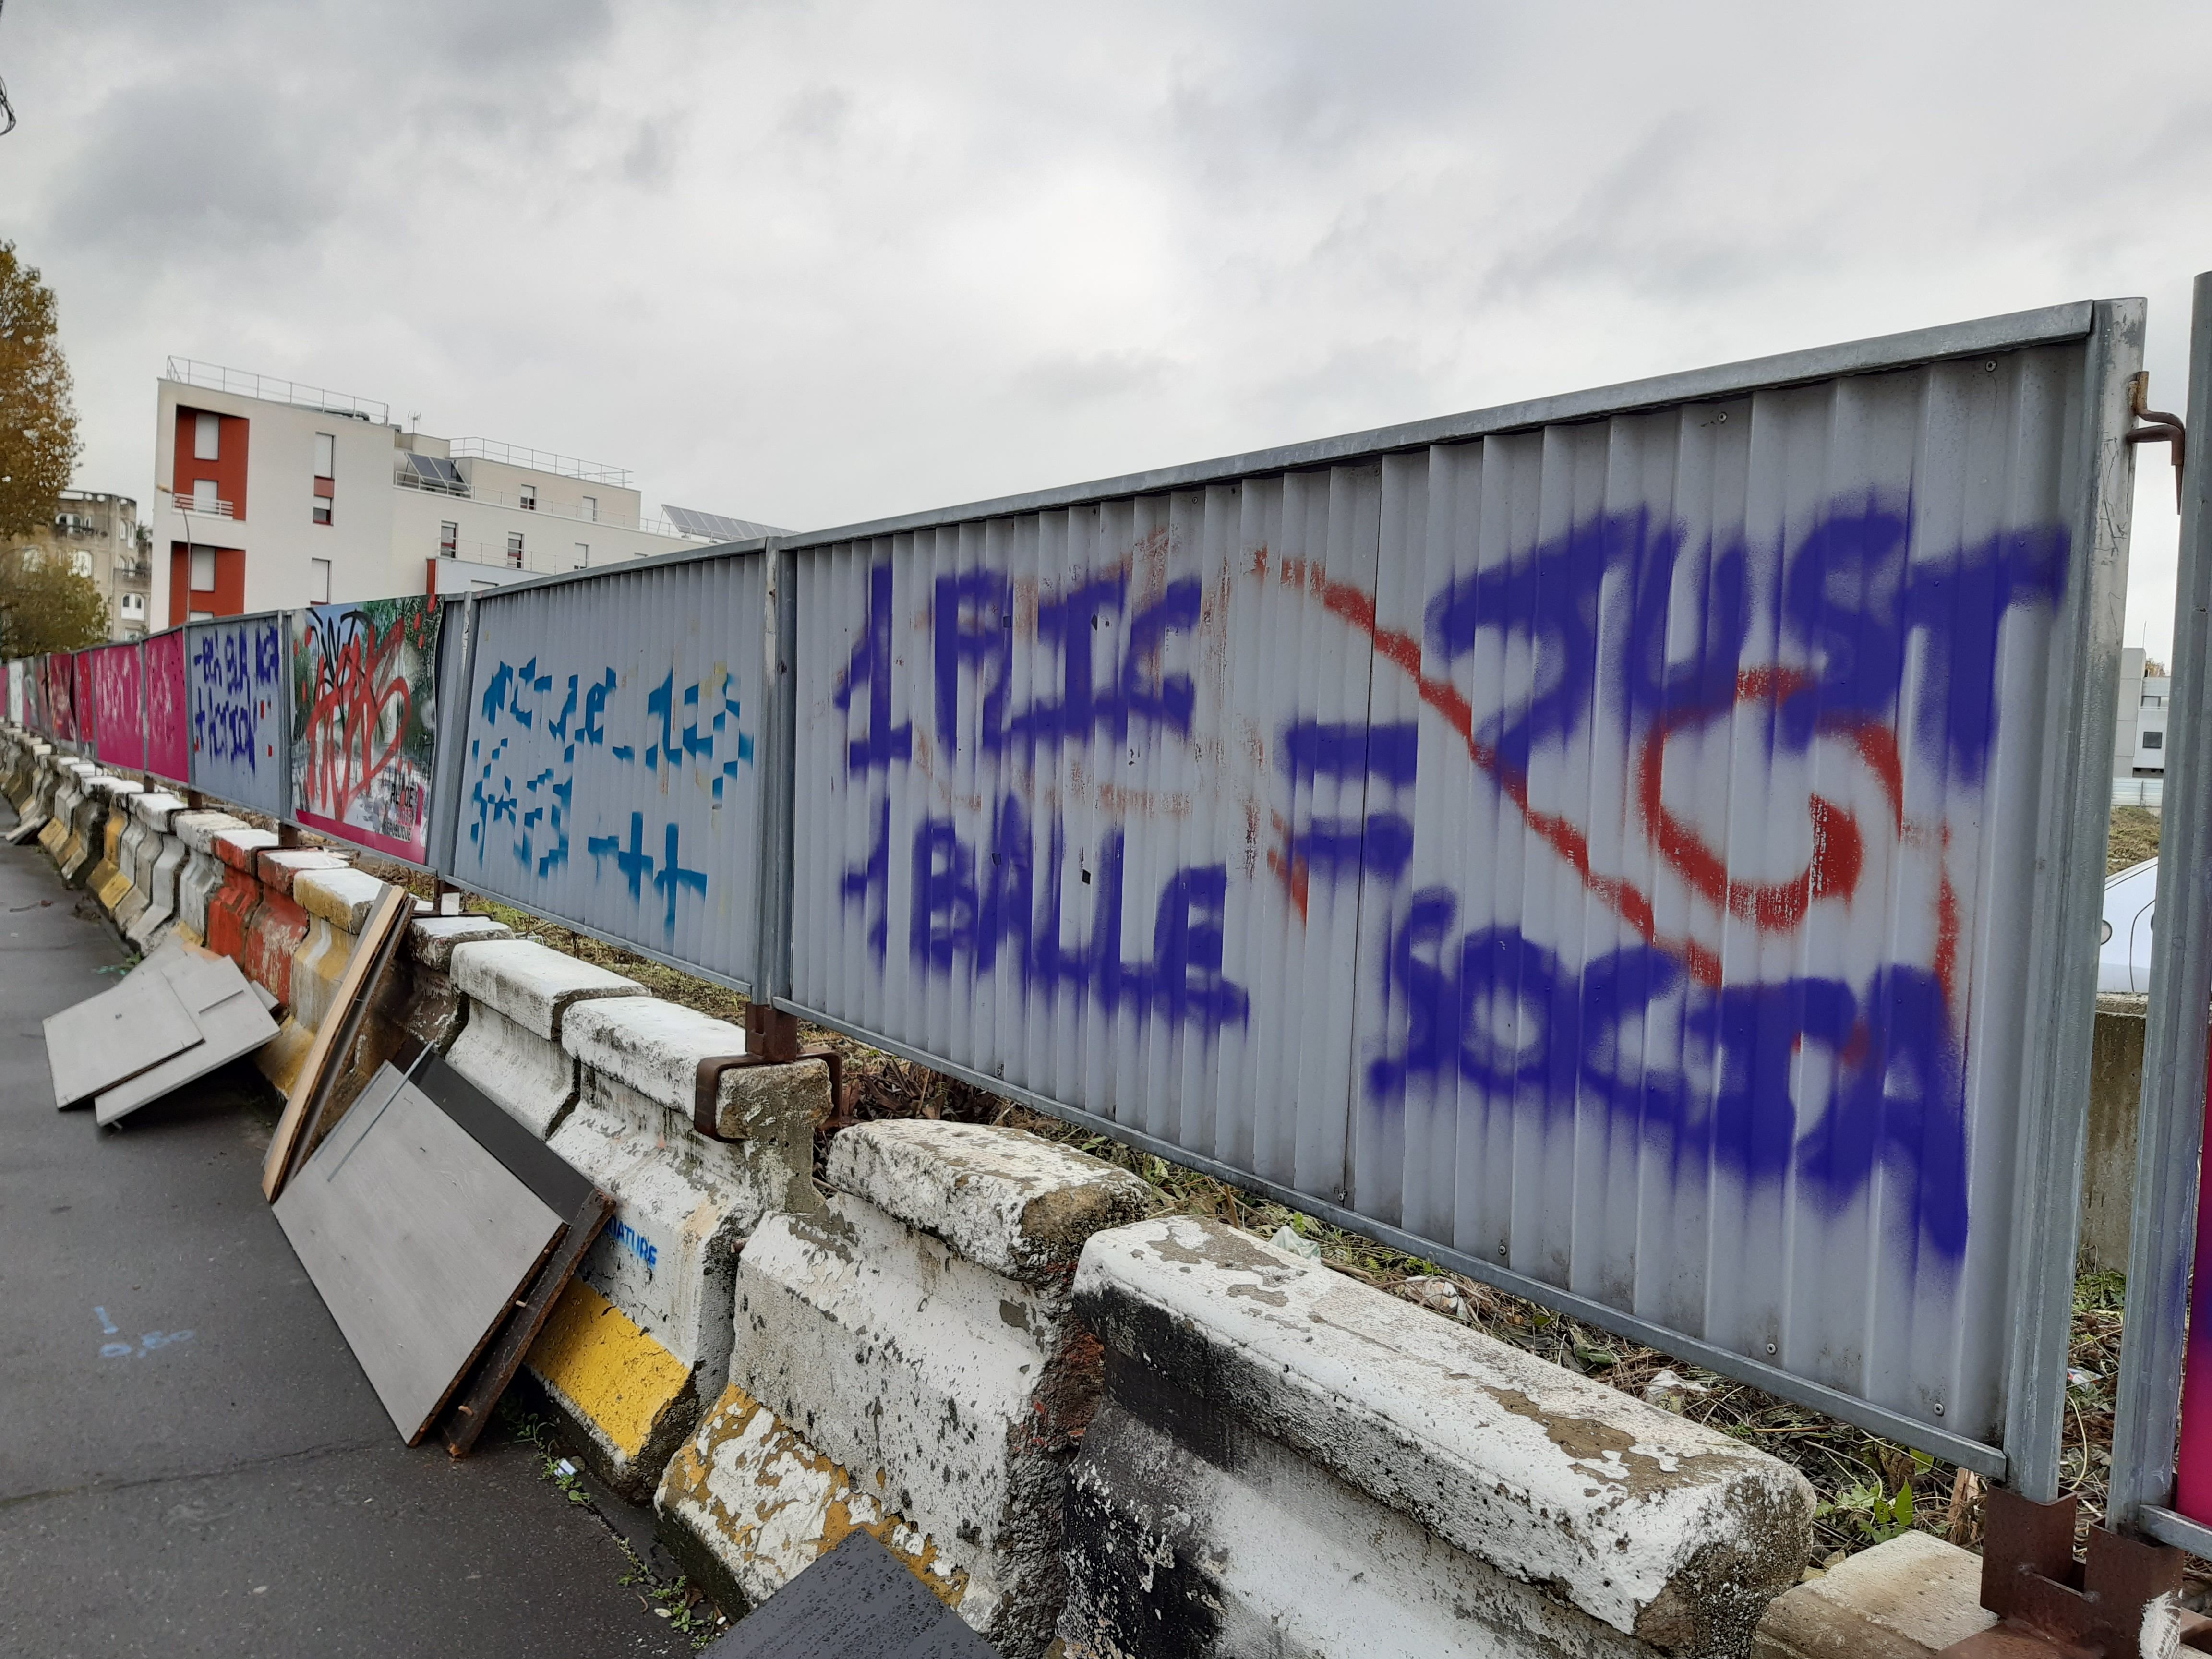 Aubervilliers (Seine-Saint-Denis), le 4 novembre 2021. Des slogans anti-police ont également été découverts sur des palissades de chantier, rue de la Maladrerie. LP/Alexandre Arlot